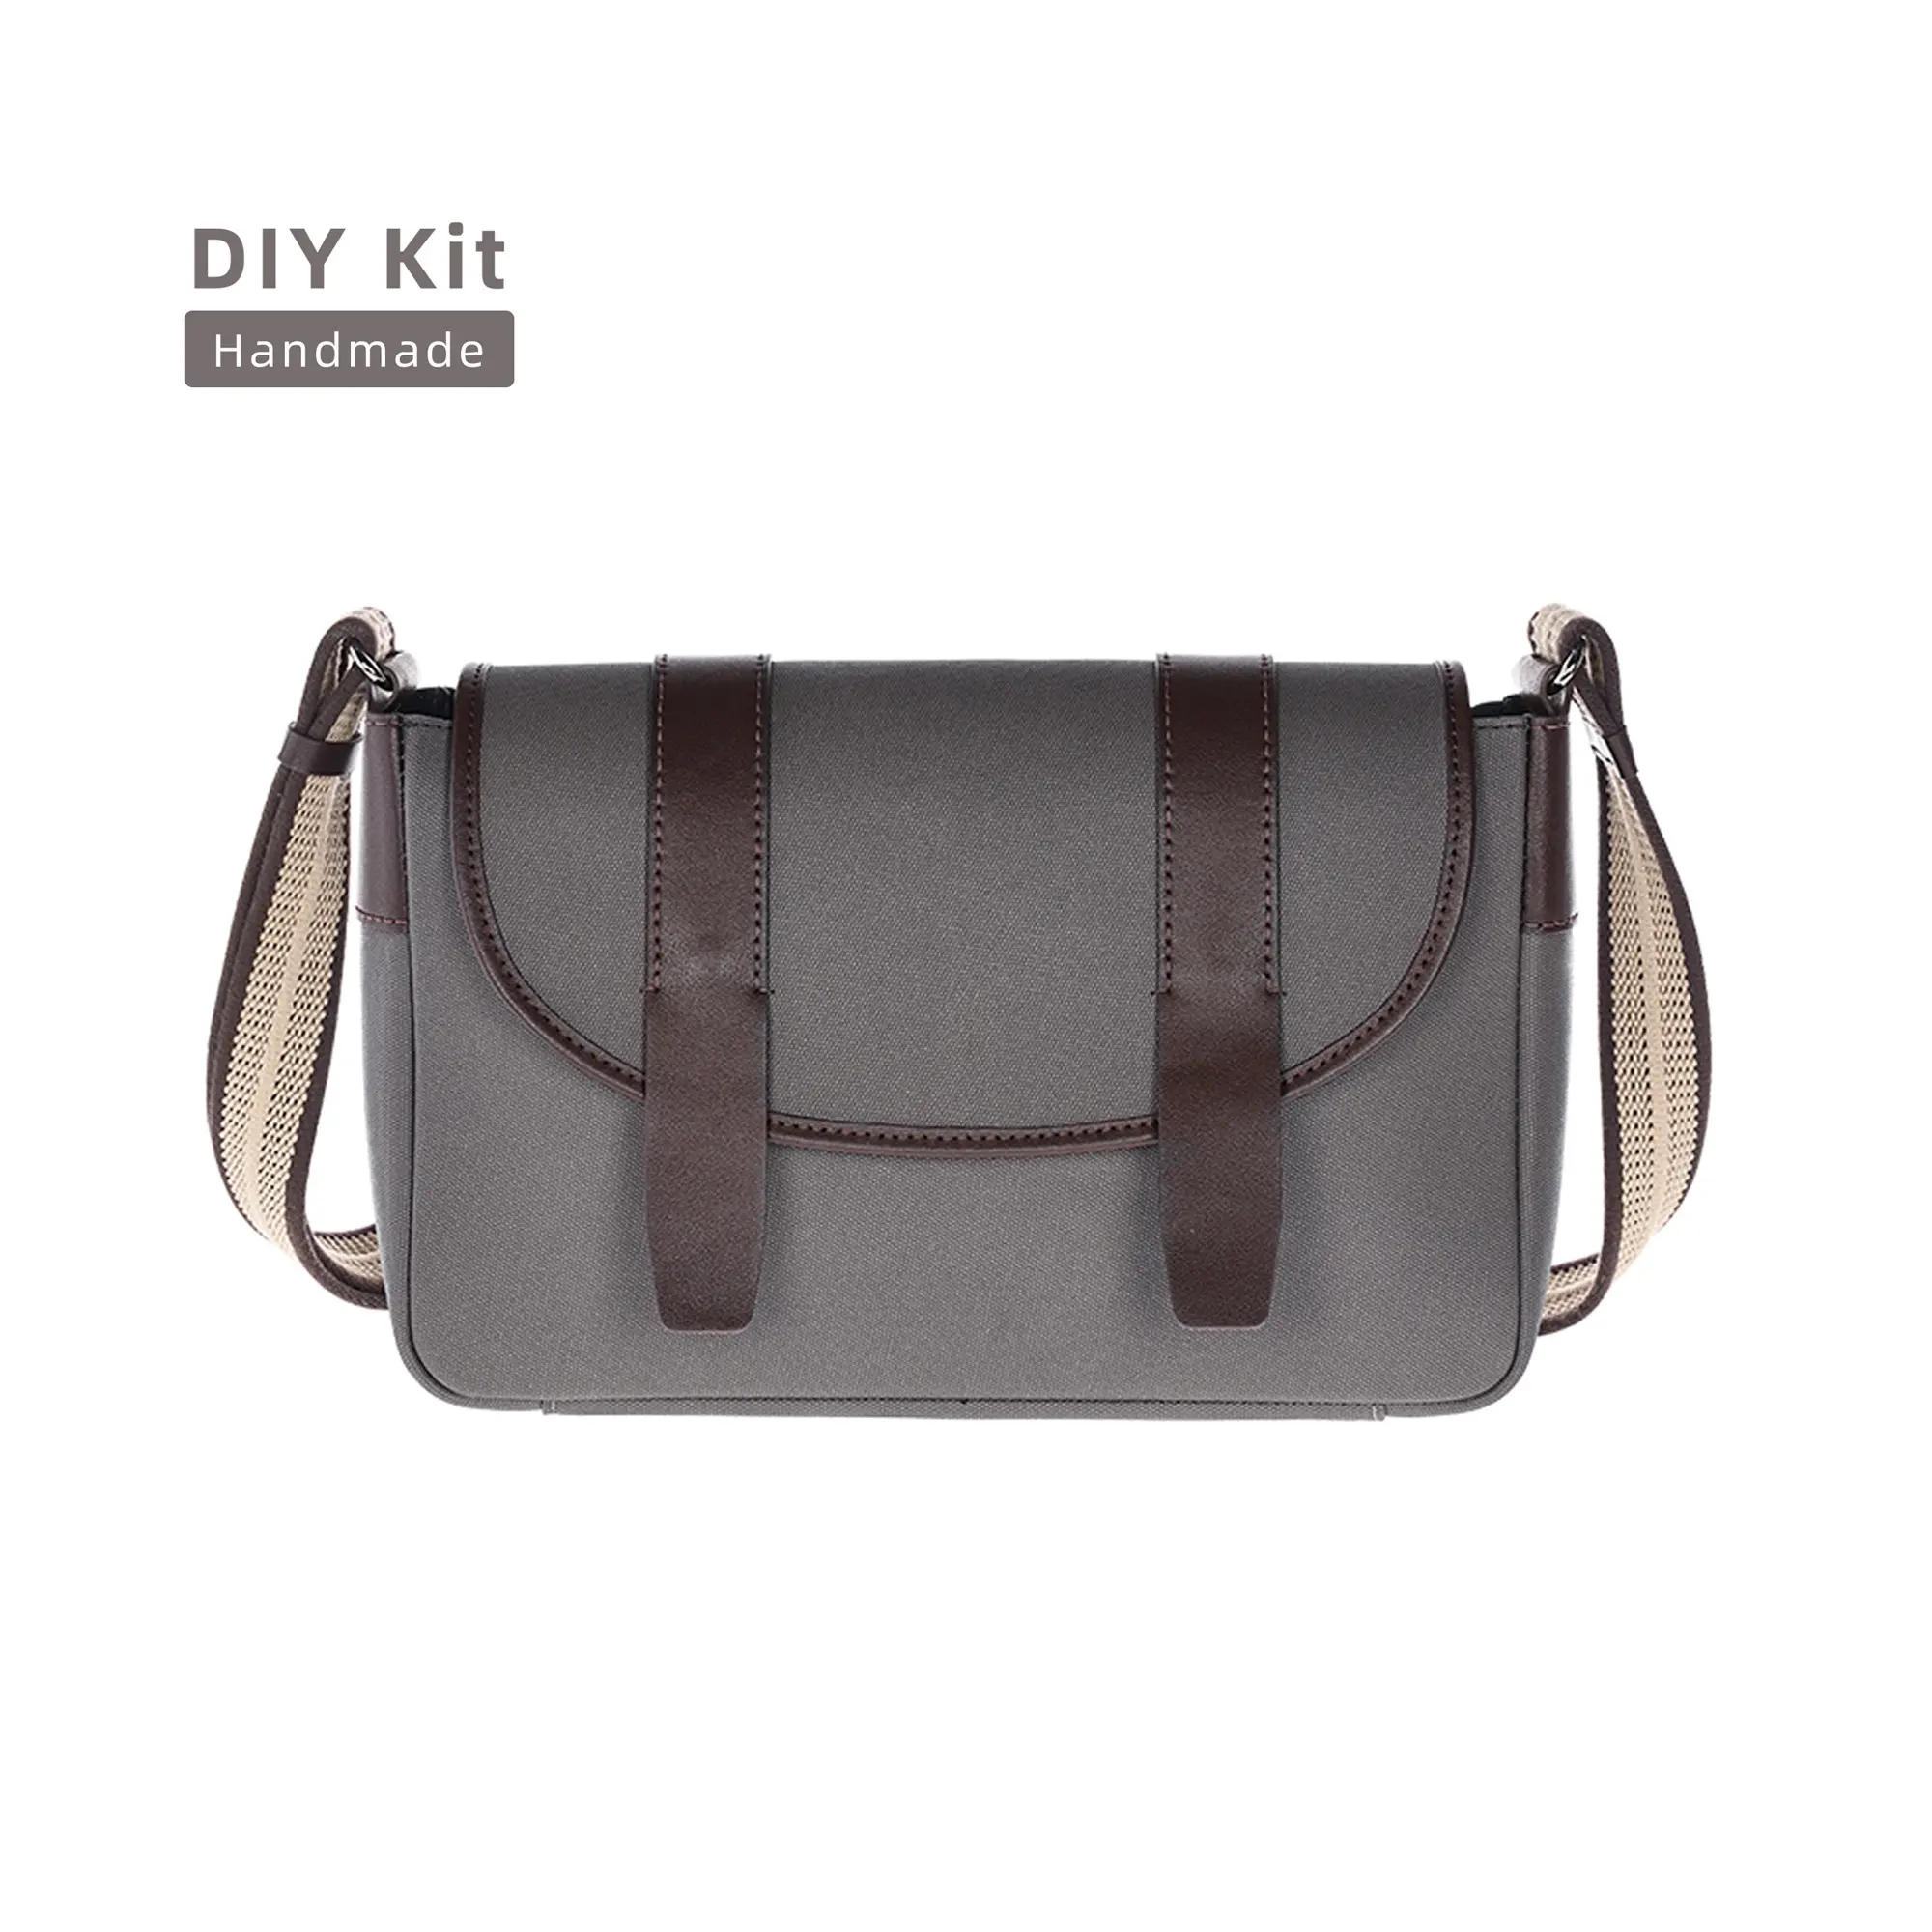 Men New Fashion Shoulder diy leather making kit tote bag Handmade homemade laptop briefcase bag for men messenger bags